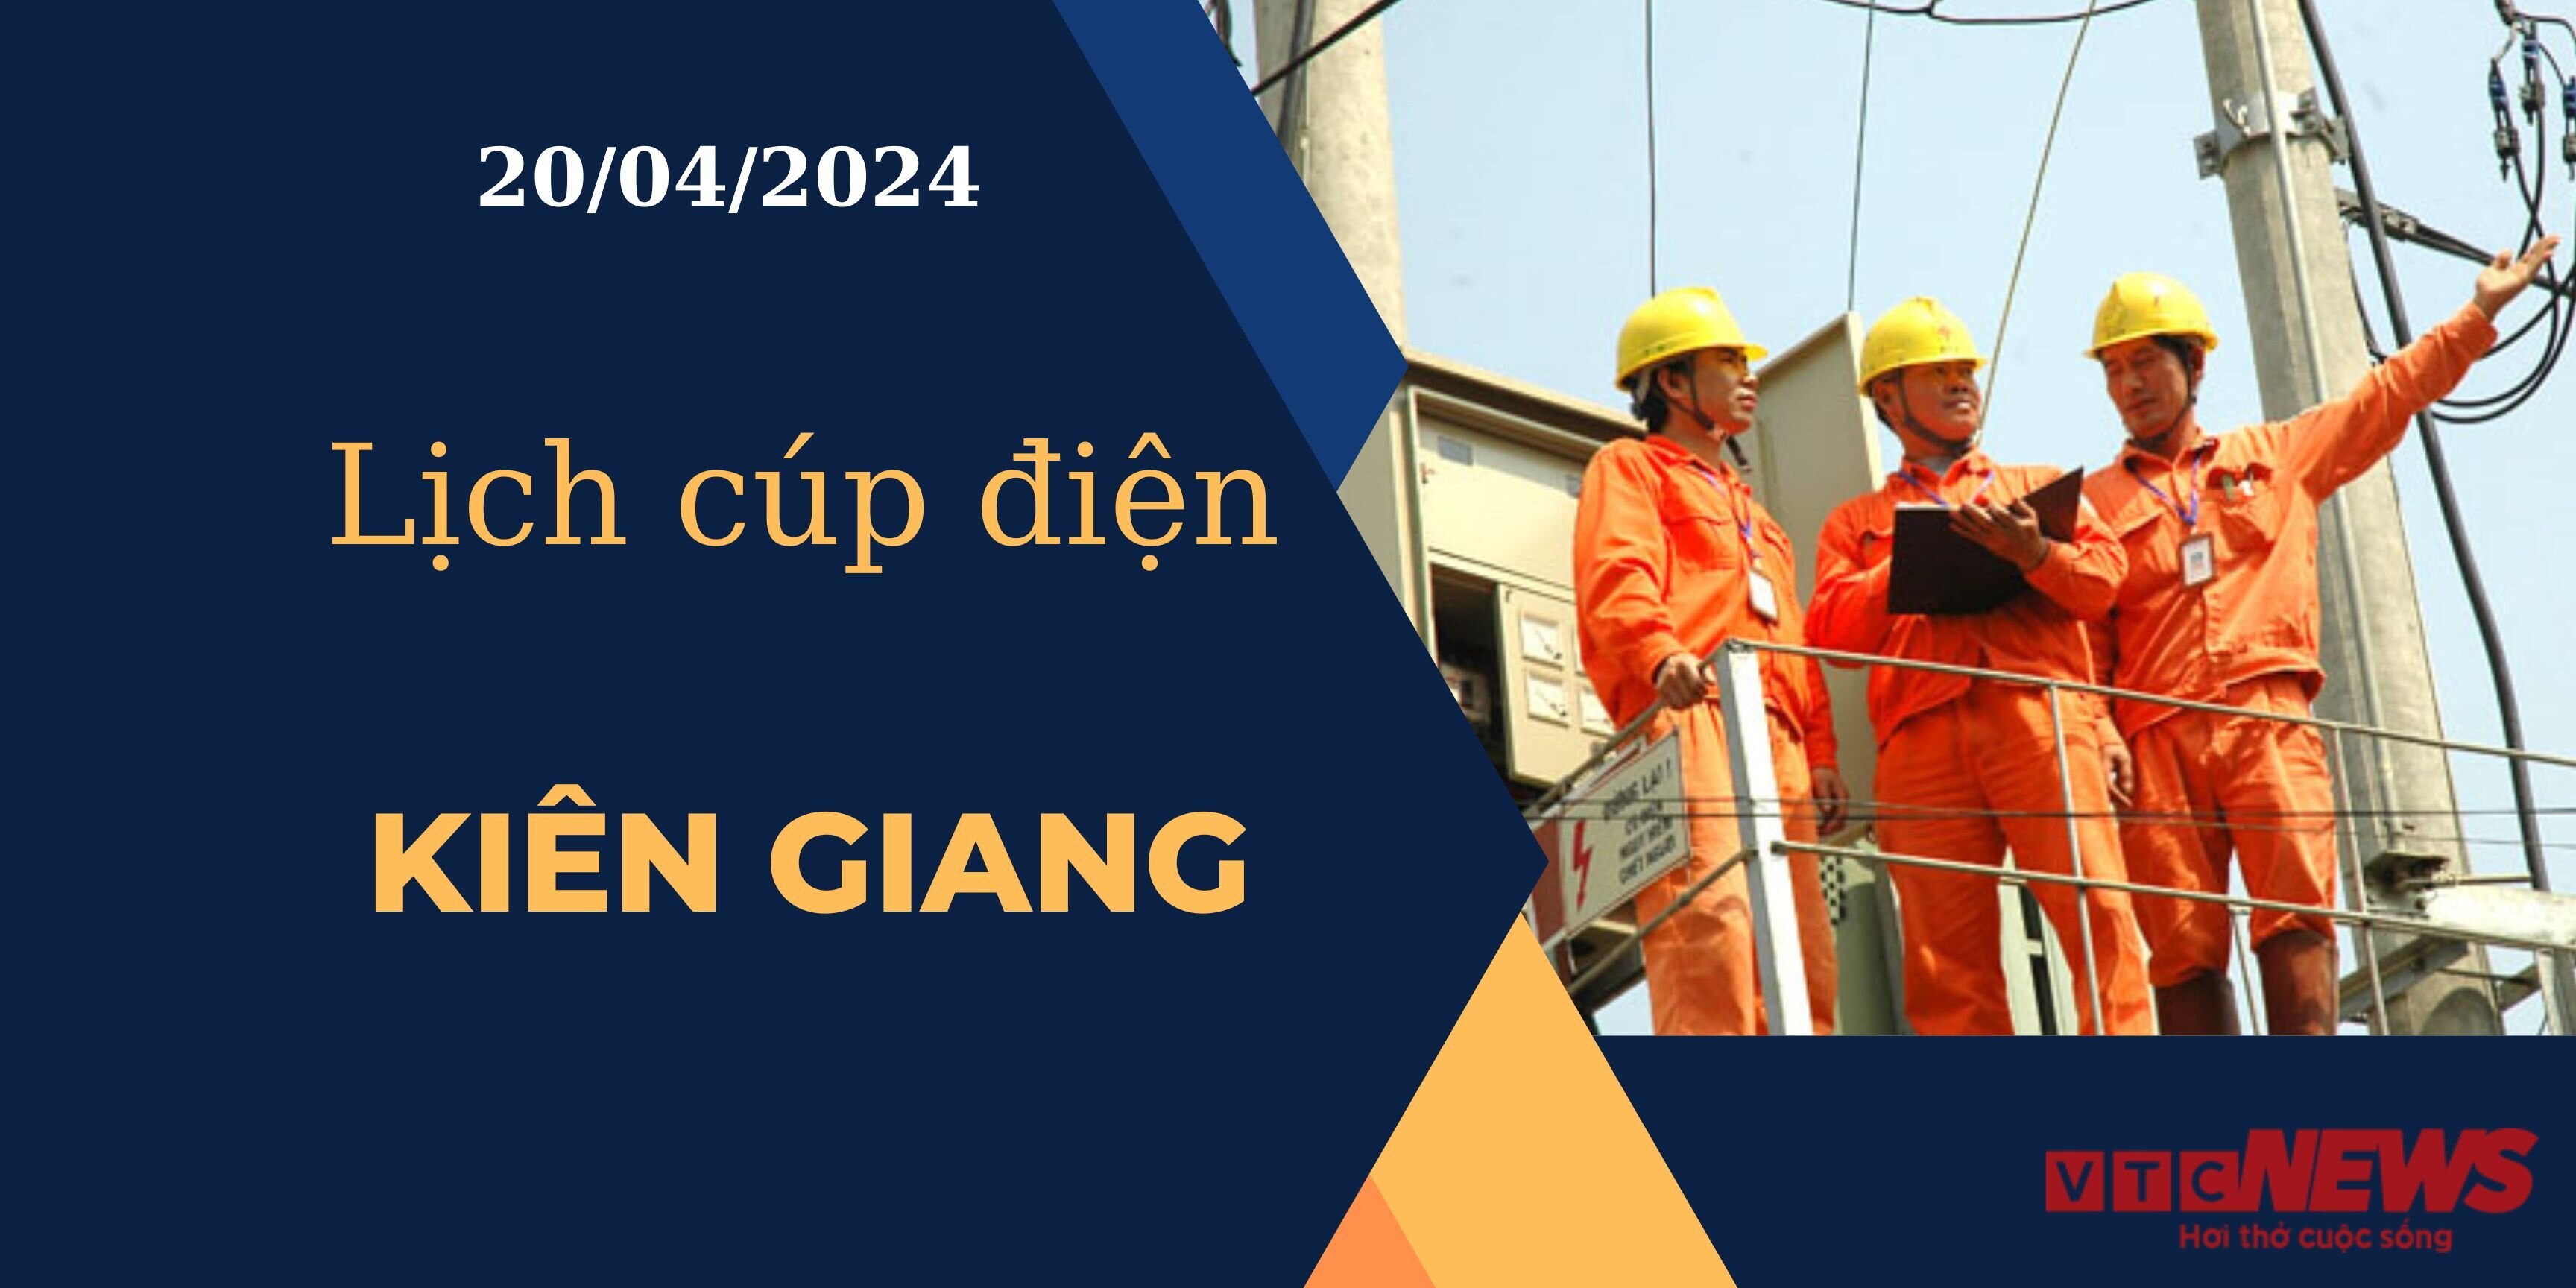 Lịch cúp điện hôm nay ngày 20/04/2024 tại Kiên Giang